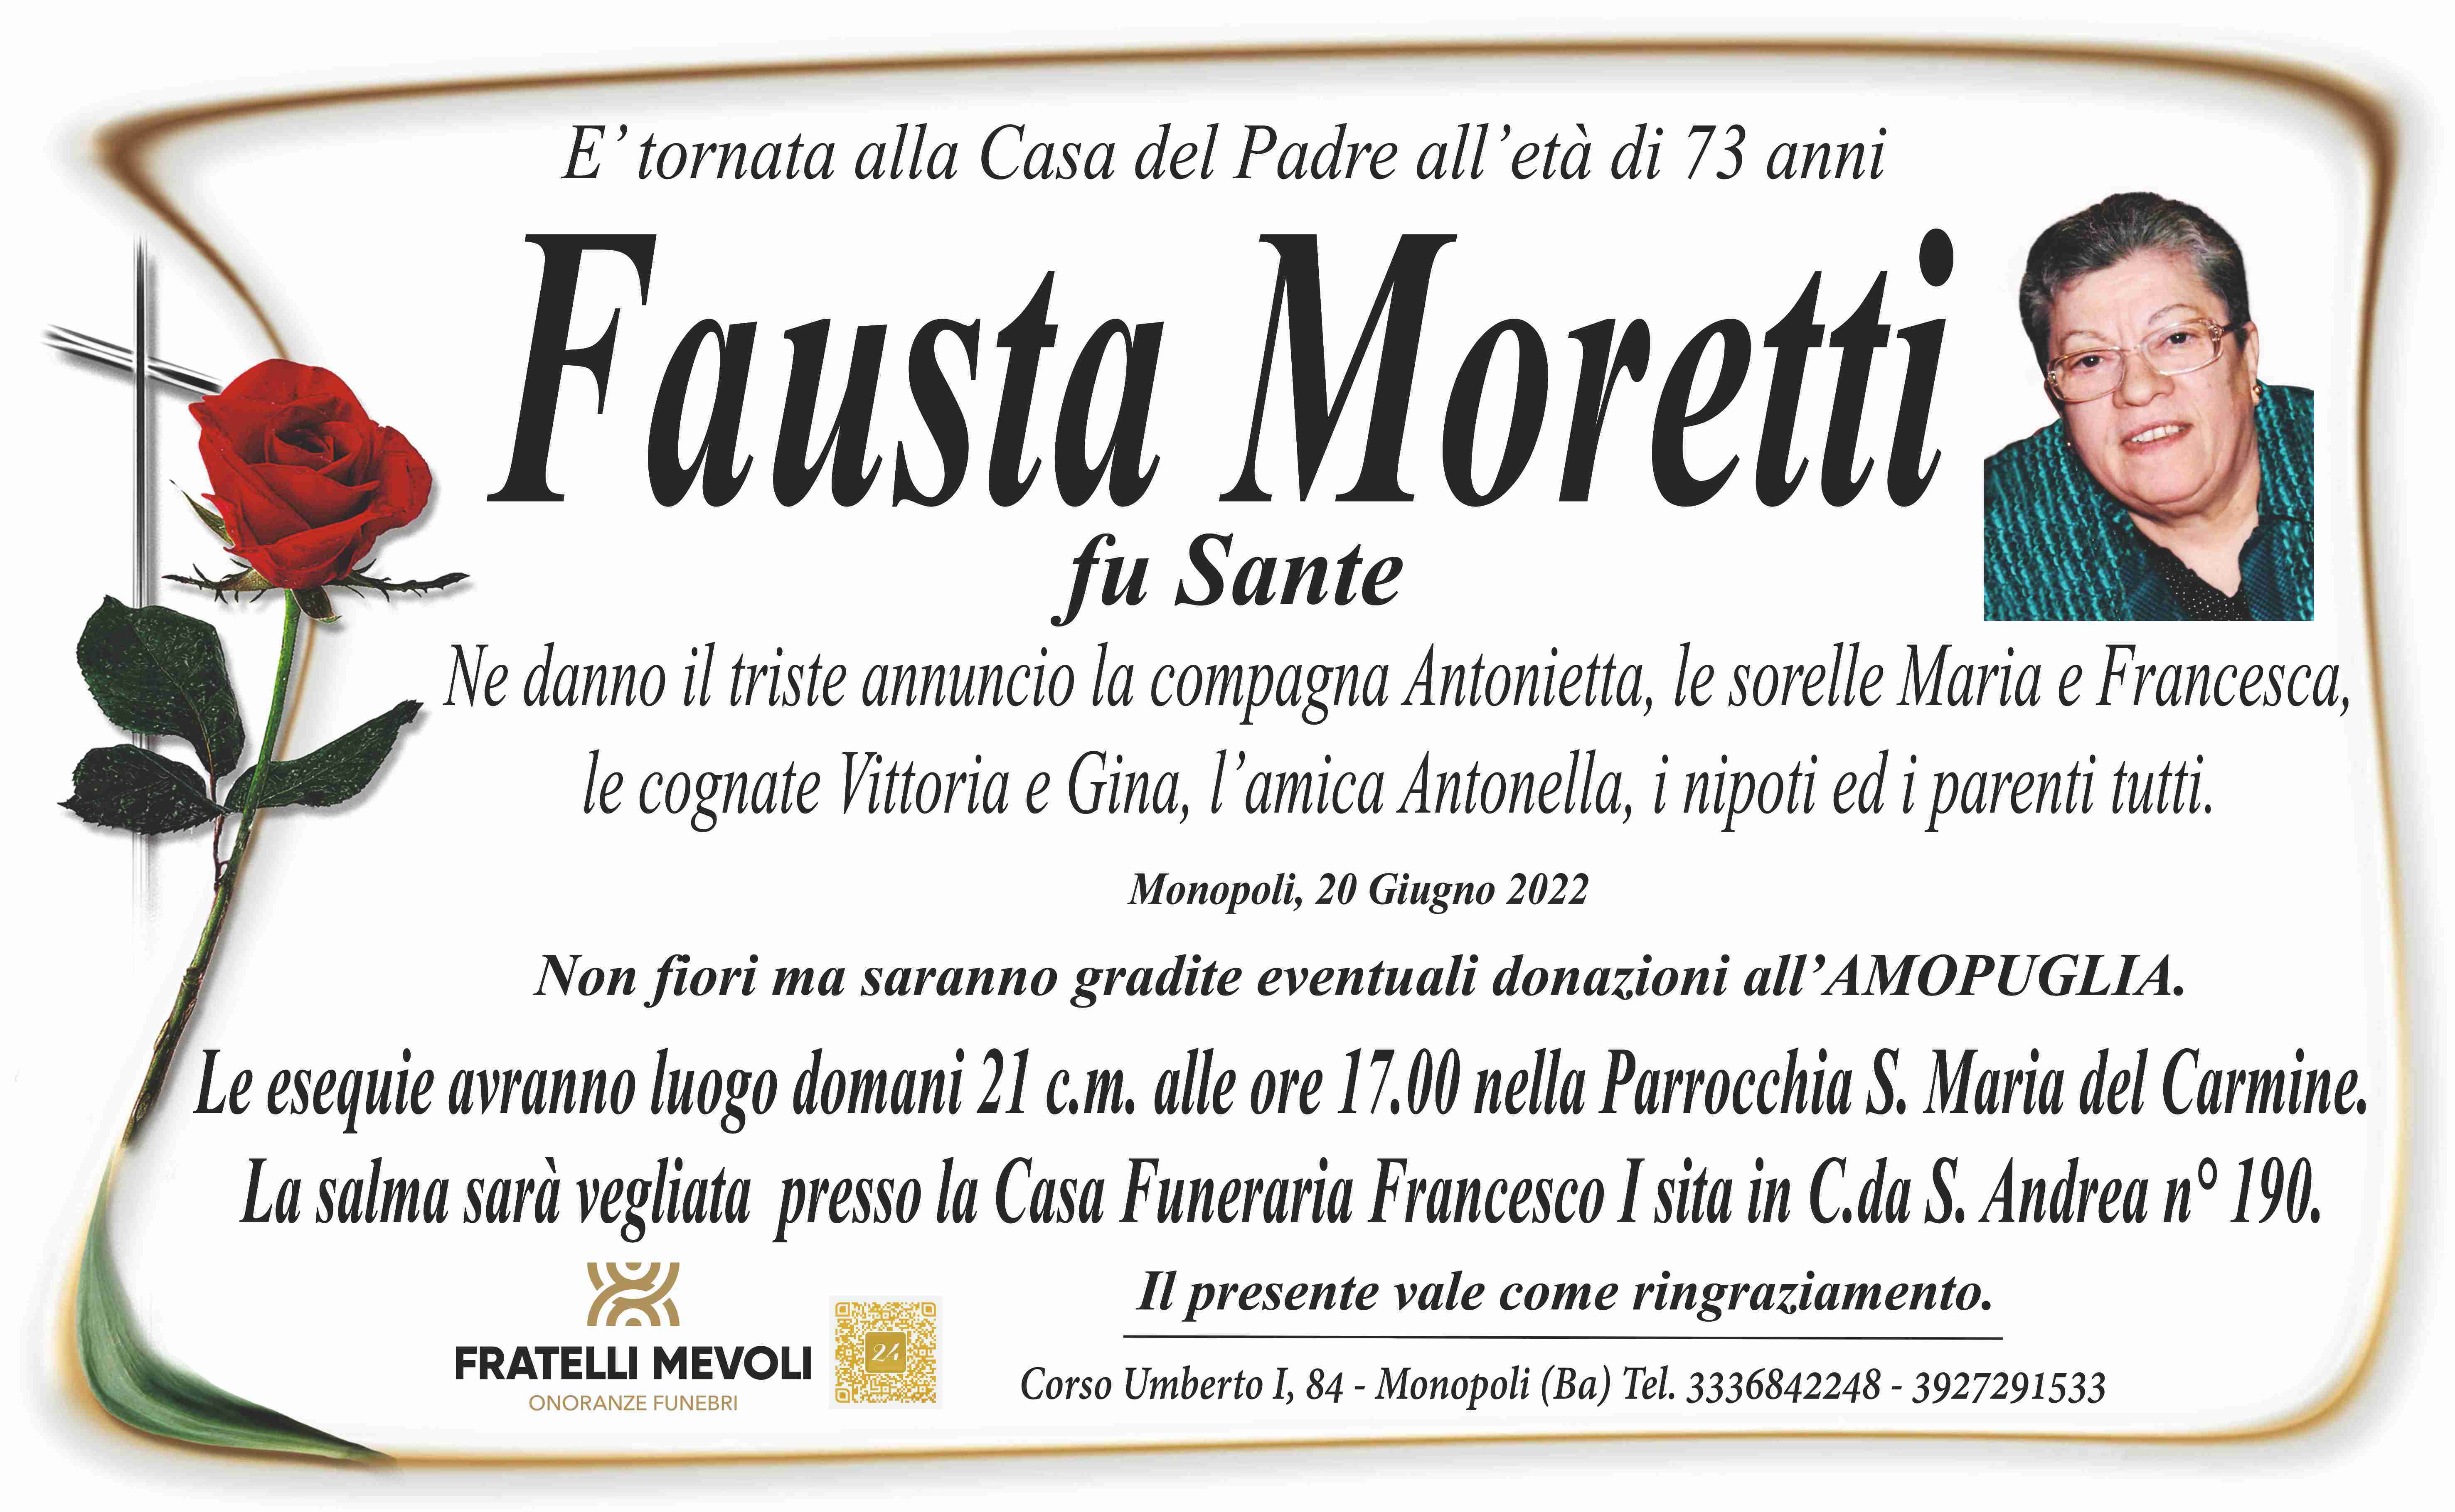 Fausta Moretti